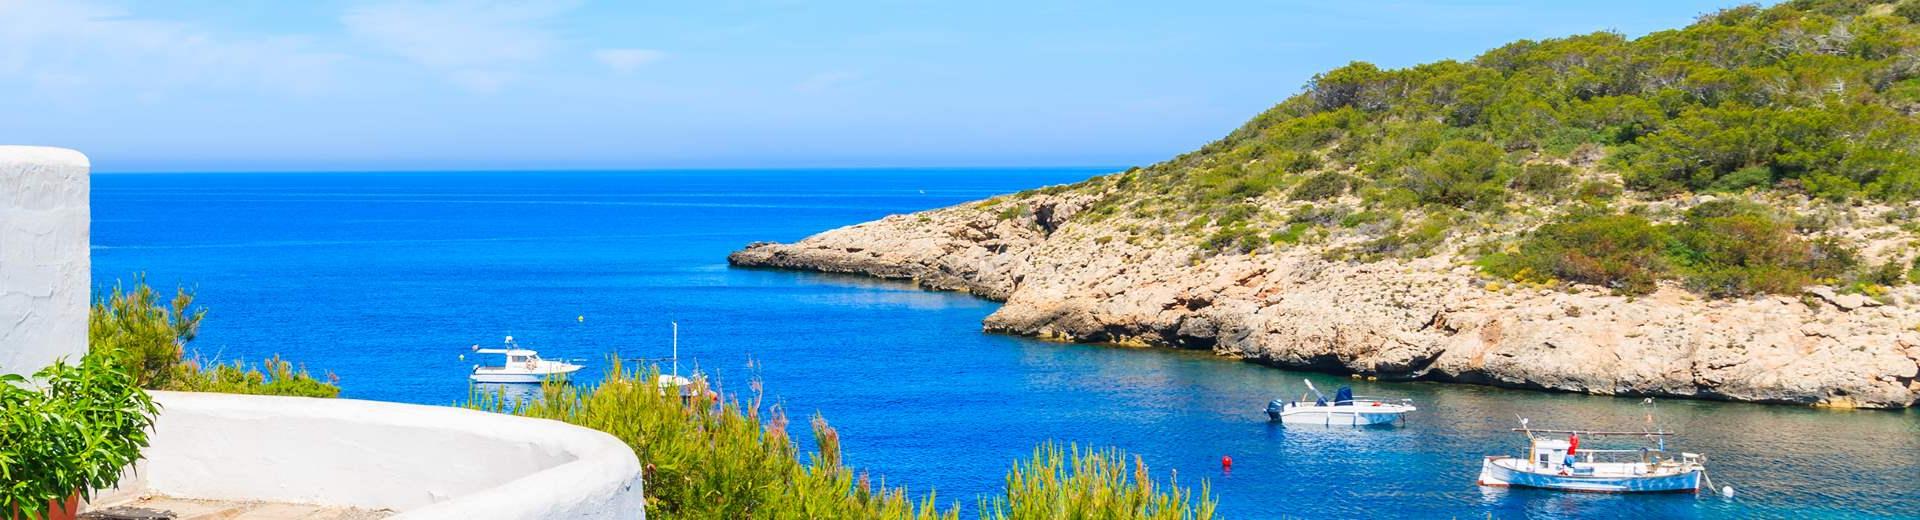 Vakantiehuizen en appartementen op Menorca - EuroRelais